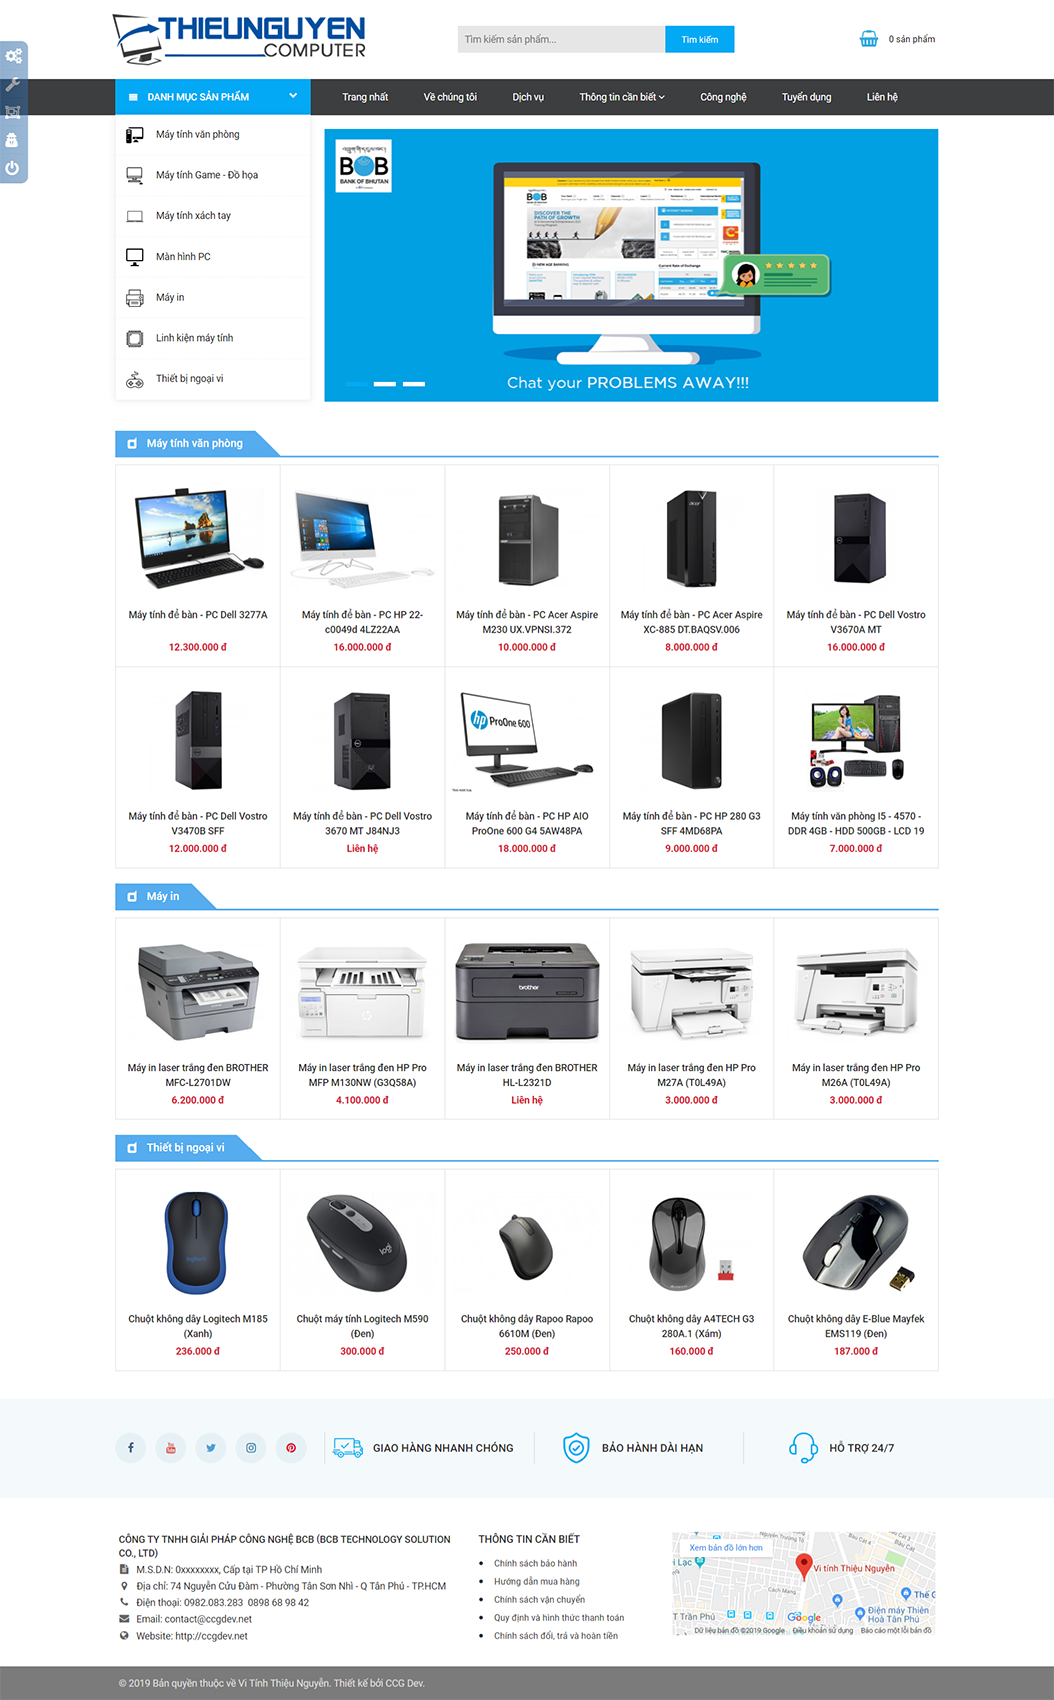 Giao diện website bán hàng công nghệ - SHOPBCB1 1